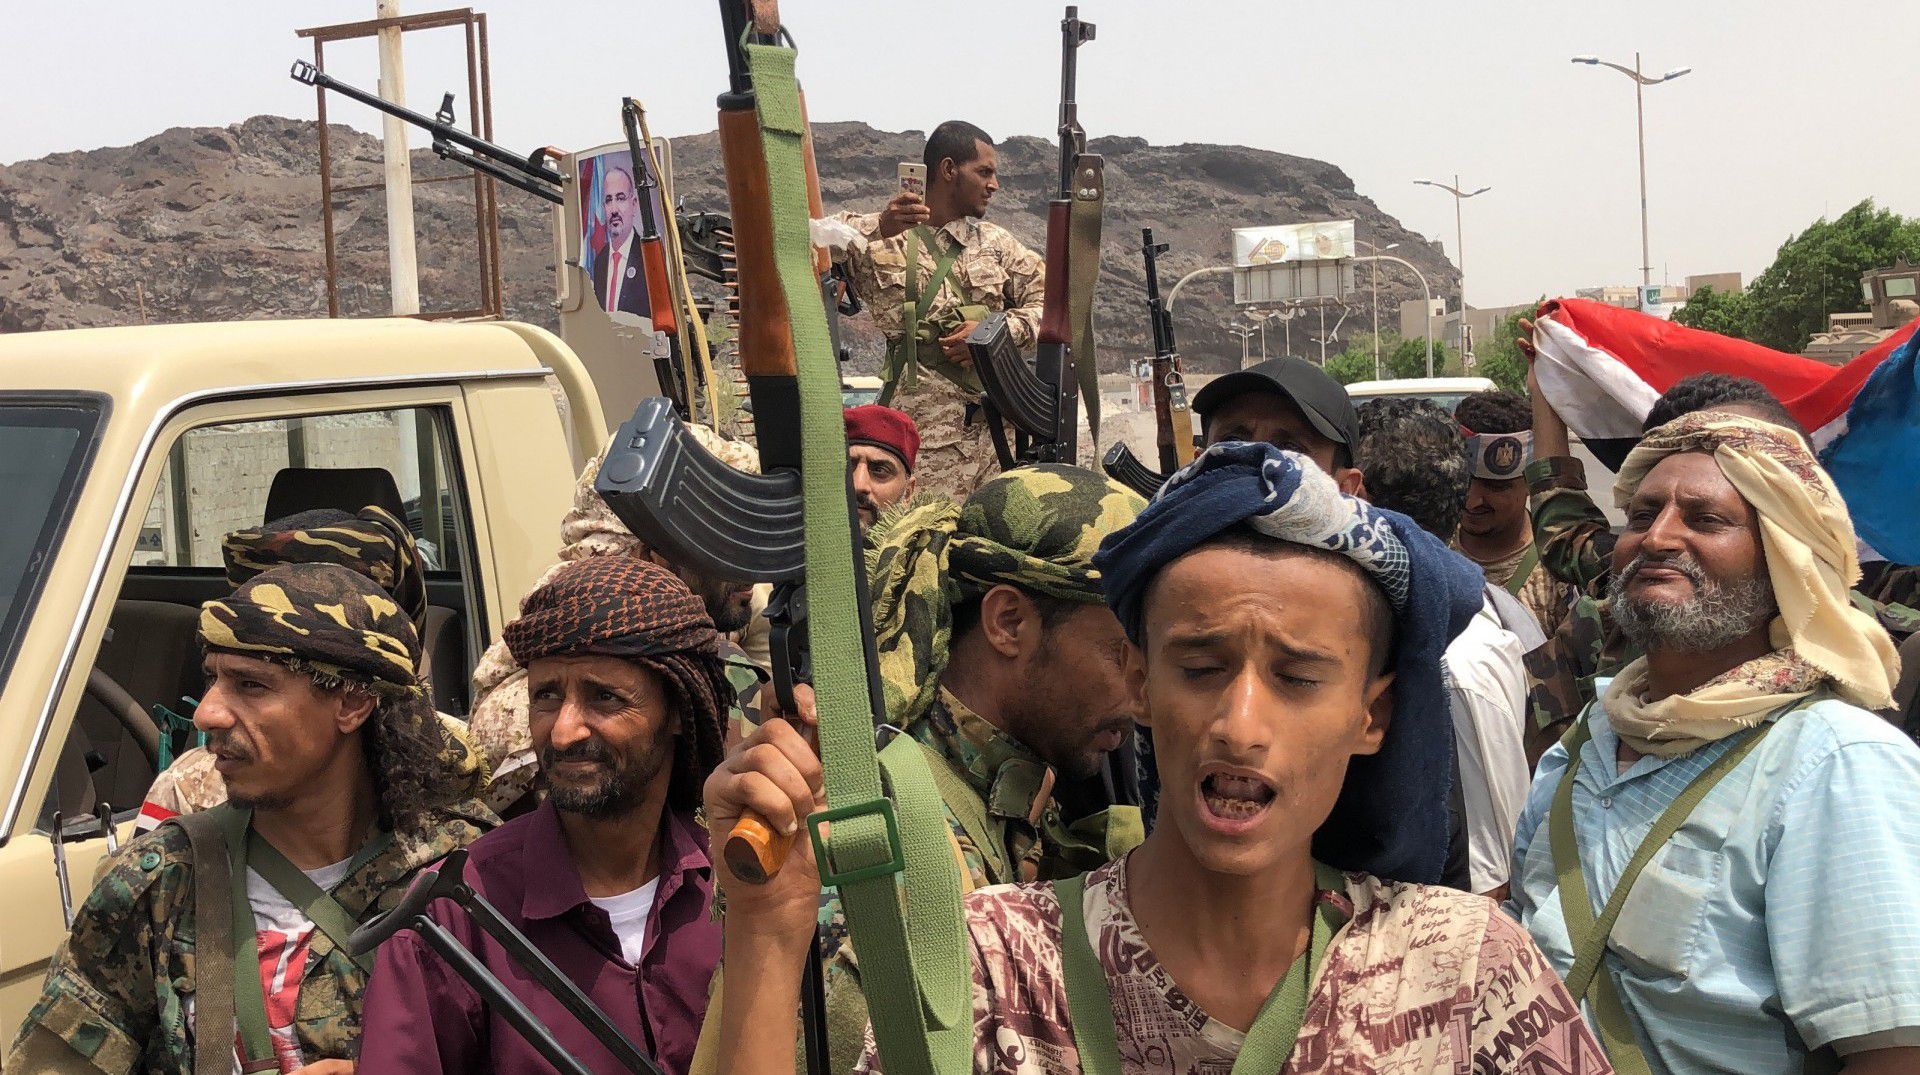 Los partidarios de las fuerzas separatistas en el sur de Yemen en Adén, el 10 de agosto de 2019. Los secesionistas están enfrentados a las fuerzas leales a Al Hadi, y ambos habían combatido a los rebeldes hutíes (Foto de Nabil HASAN / AFP)